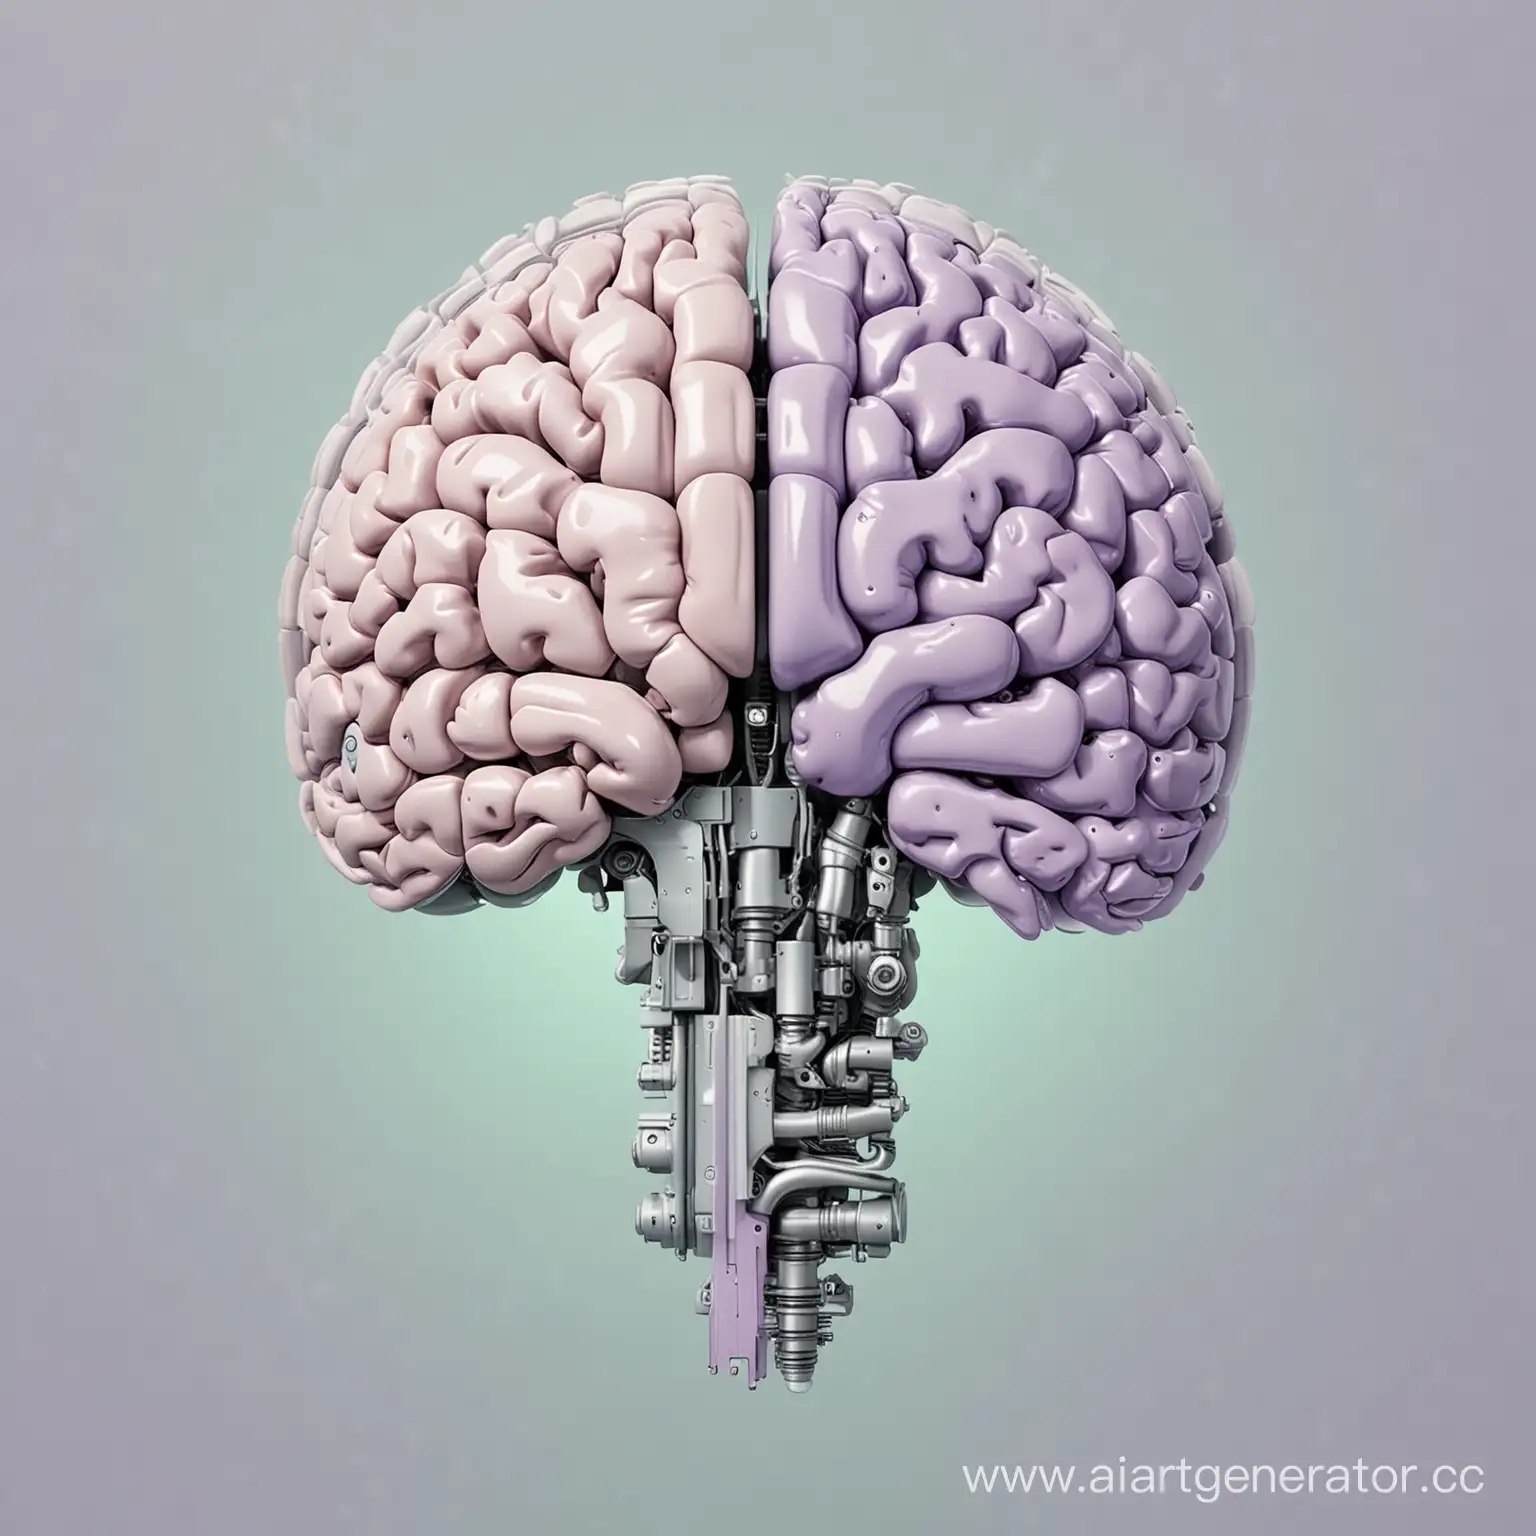 половина человеческого мозга, половина робота в стиле минимализм. разделено пополам. левая часть мозга в нежно мятном цвете, вторая в нежно сиреневом